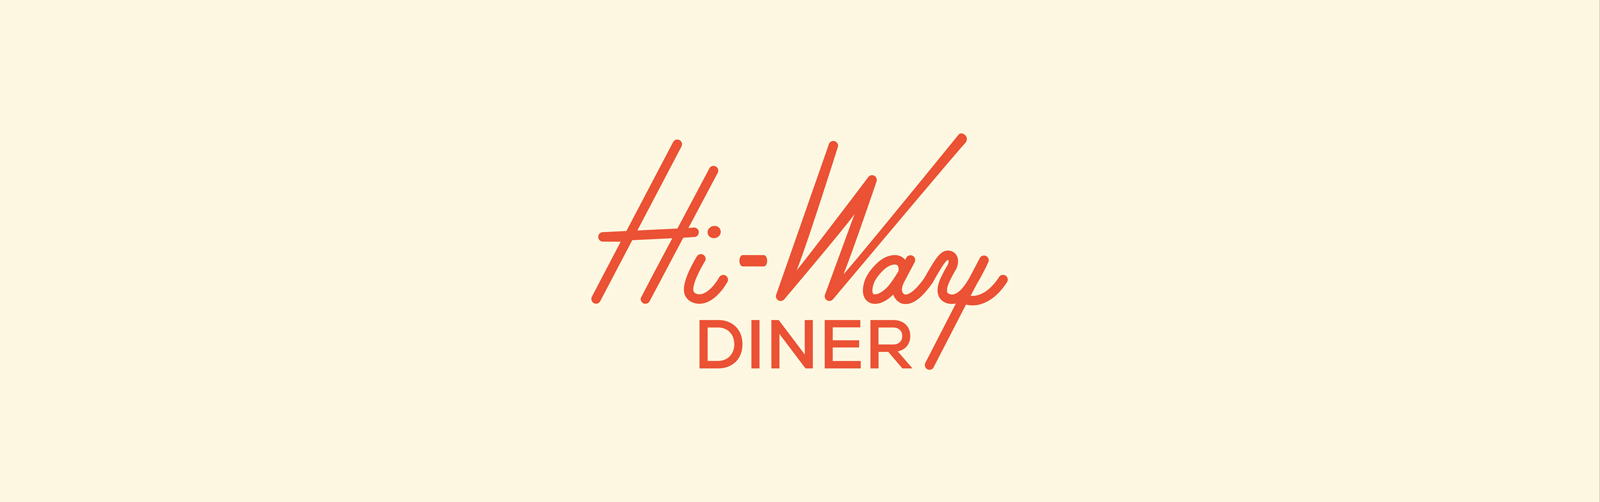 Hi-Way Diner logo concept in Coral on beige background.